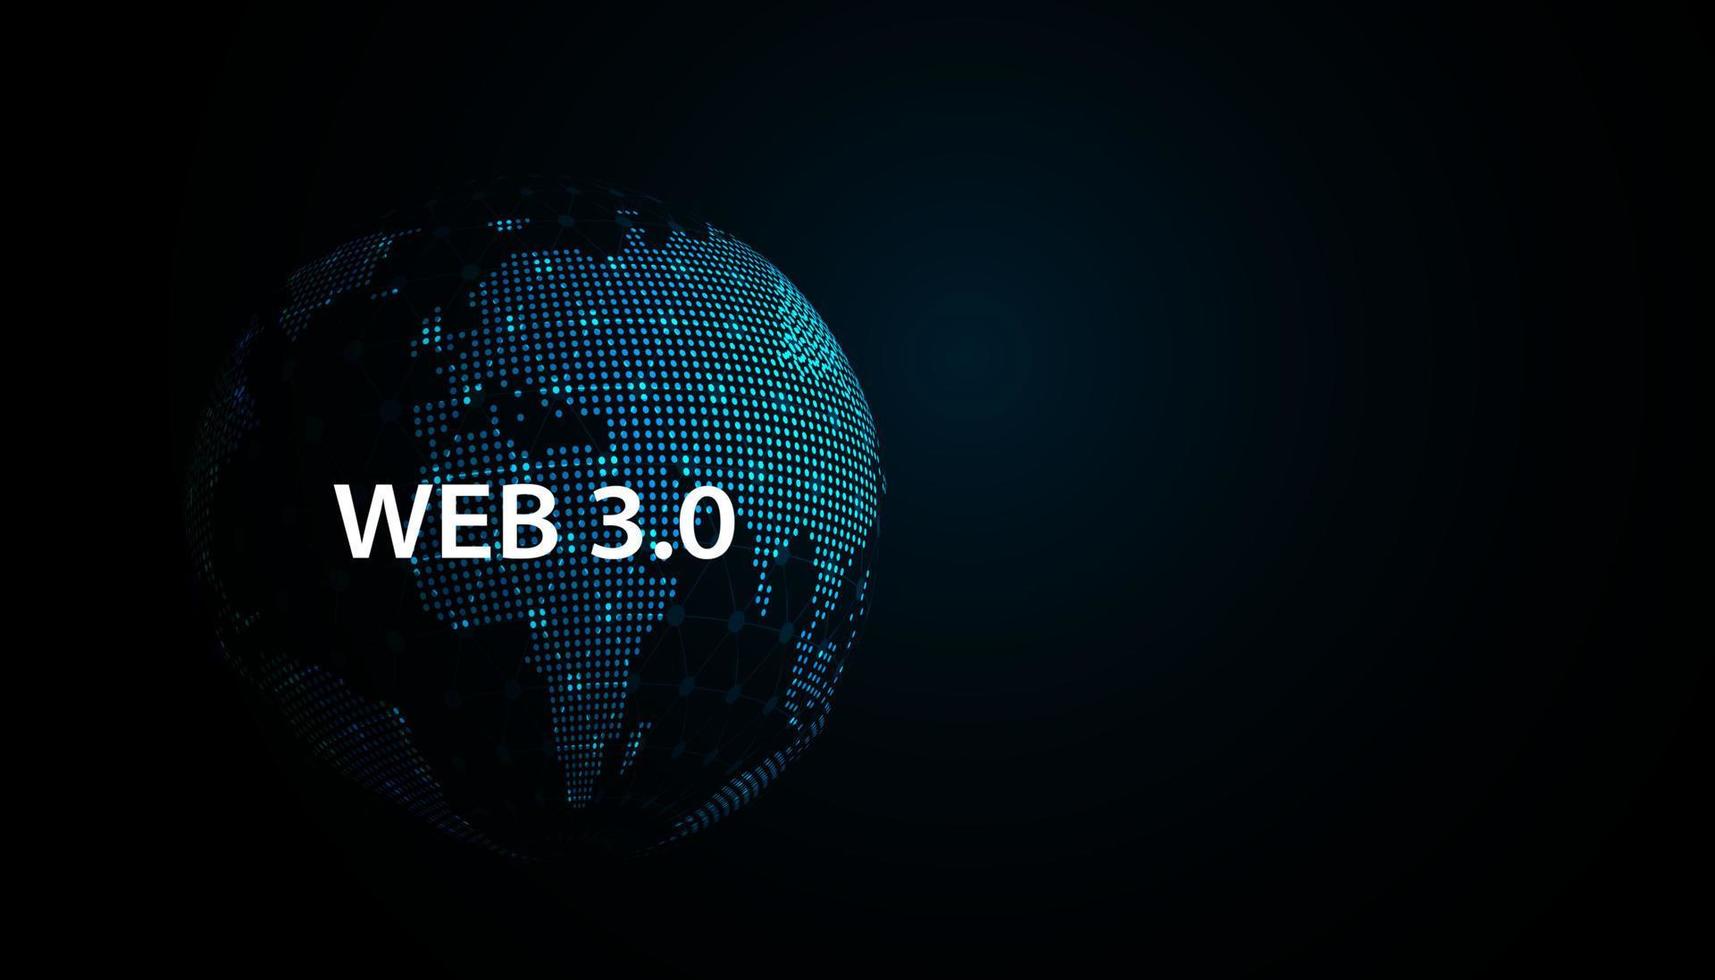 tecnologia de mapa do mundo abstrato pontos azuis conceito moderno da web 3.0 é acesso gratuito a informações ou serviços sem intermediários para controle e censura. vetor